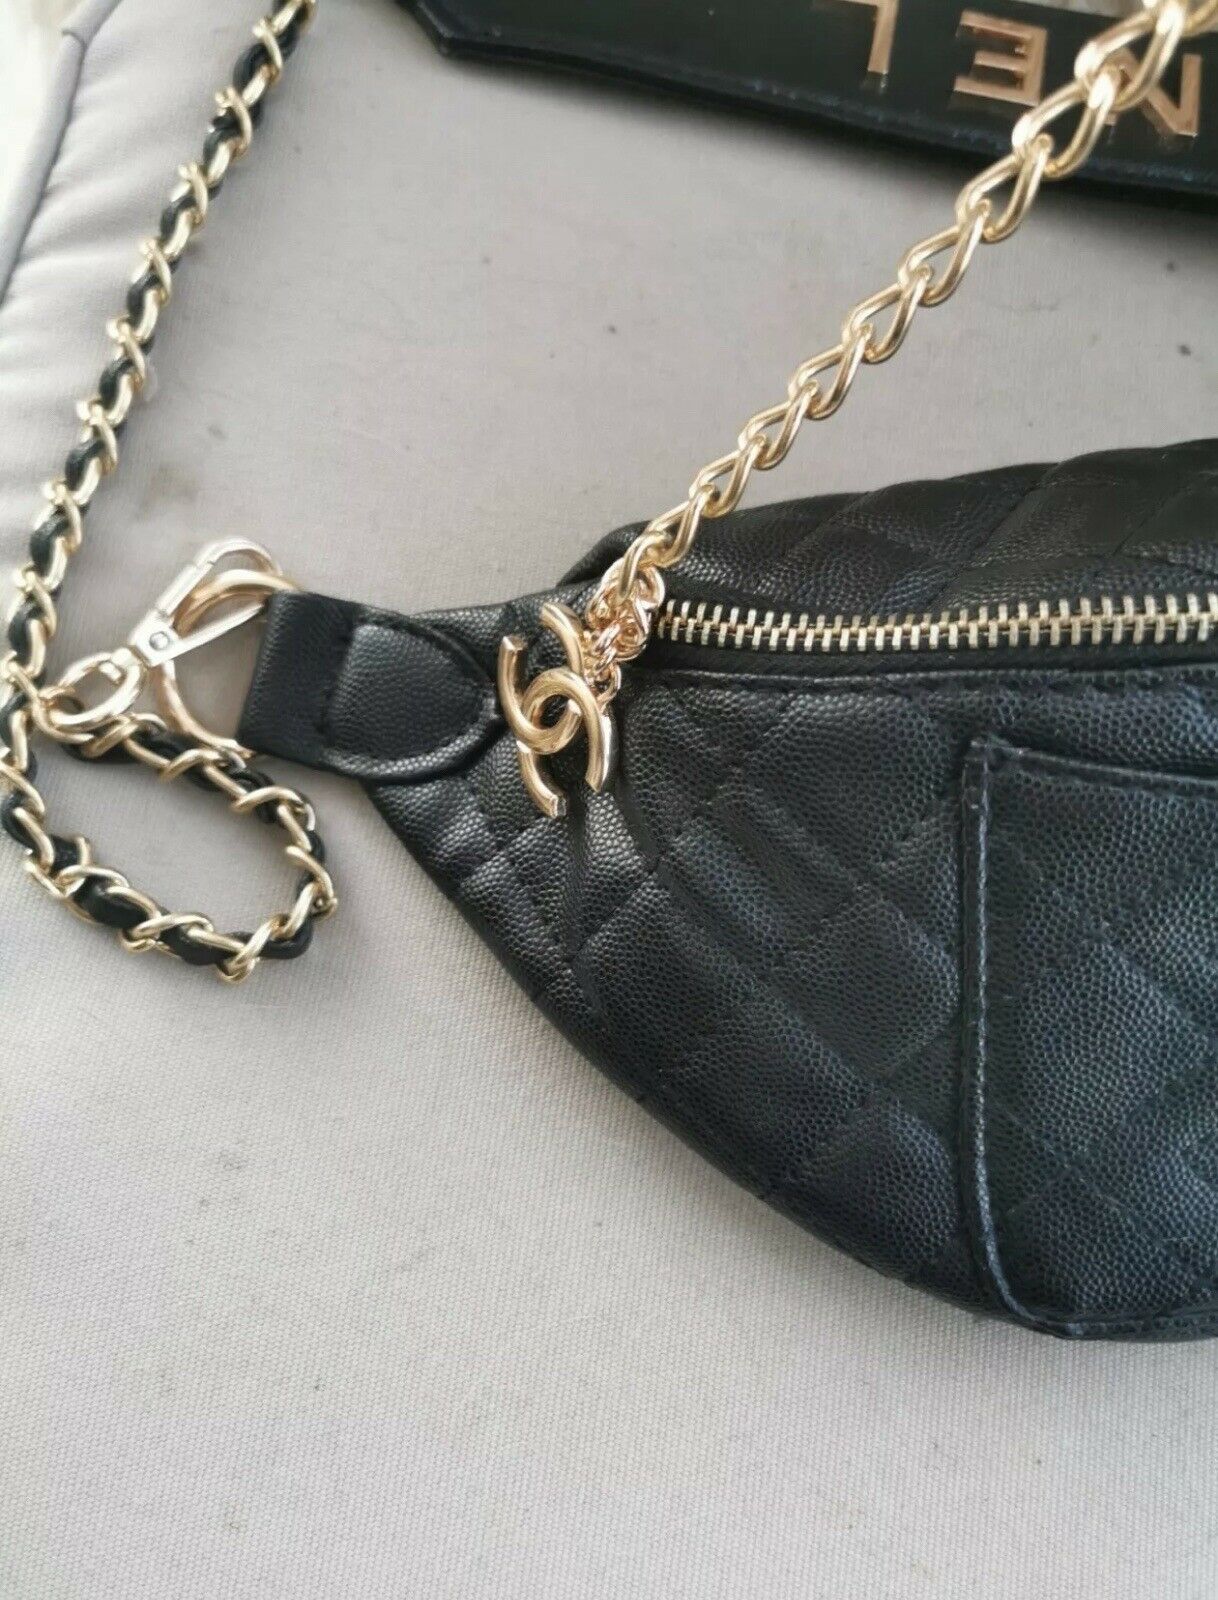 Vip Chanel Gift Bag